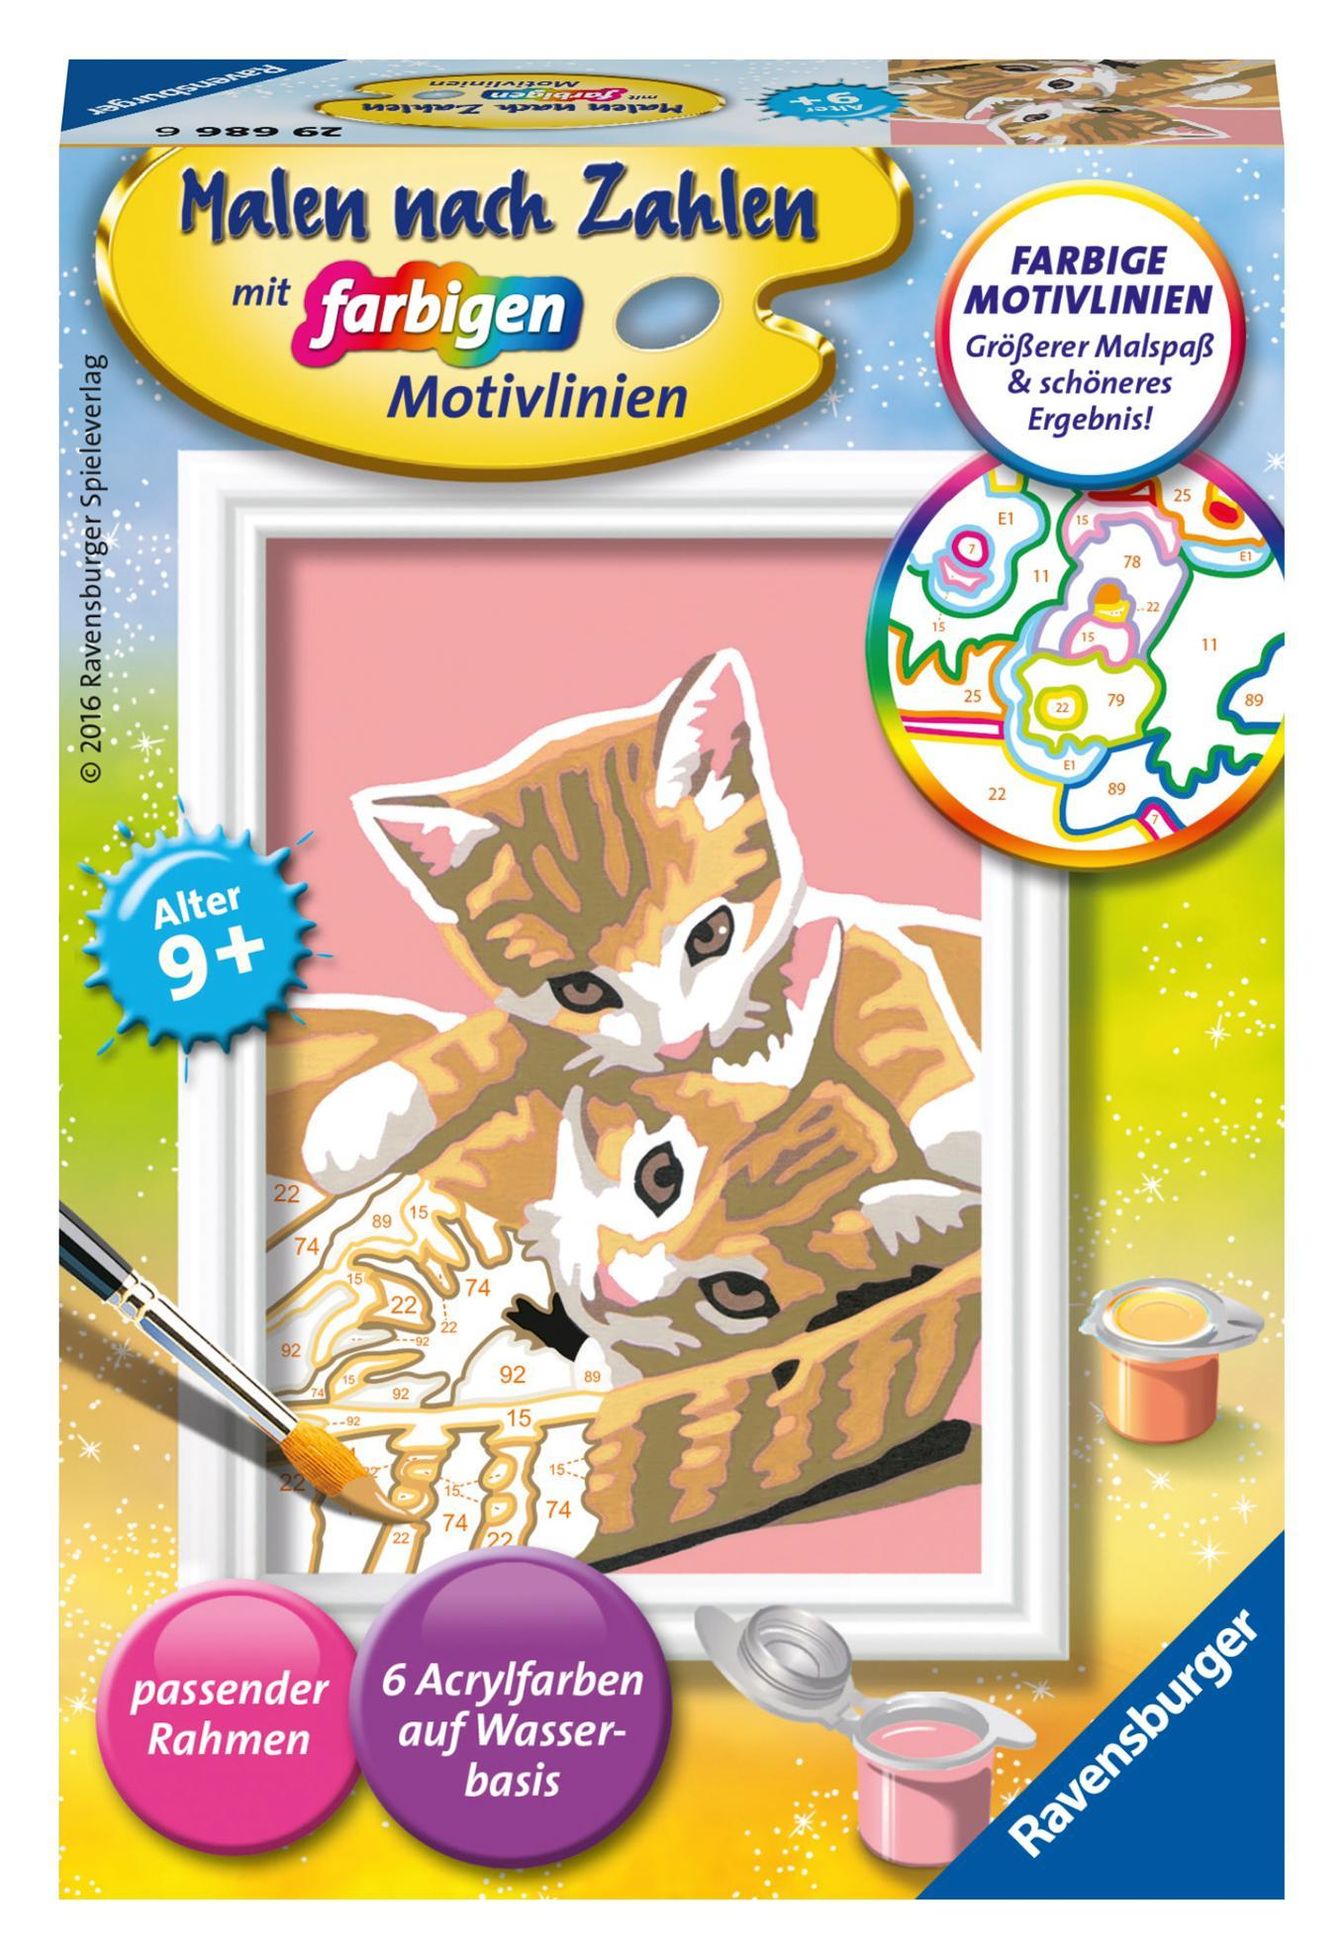 Malen nach Zahlen - Jeder kann malen Mal-Sets, Bildgröße: 8,5 x 12 cm:  Ravensburger Malen nach Zahlen 29686 - Katzenbabys - Kinder ab 9 Jahren |  Weltbild.at